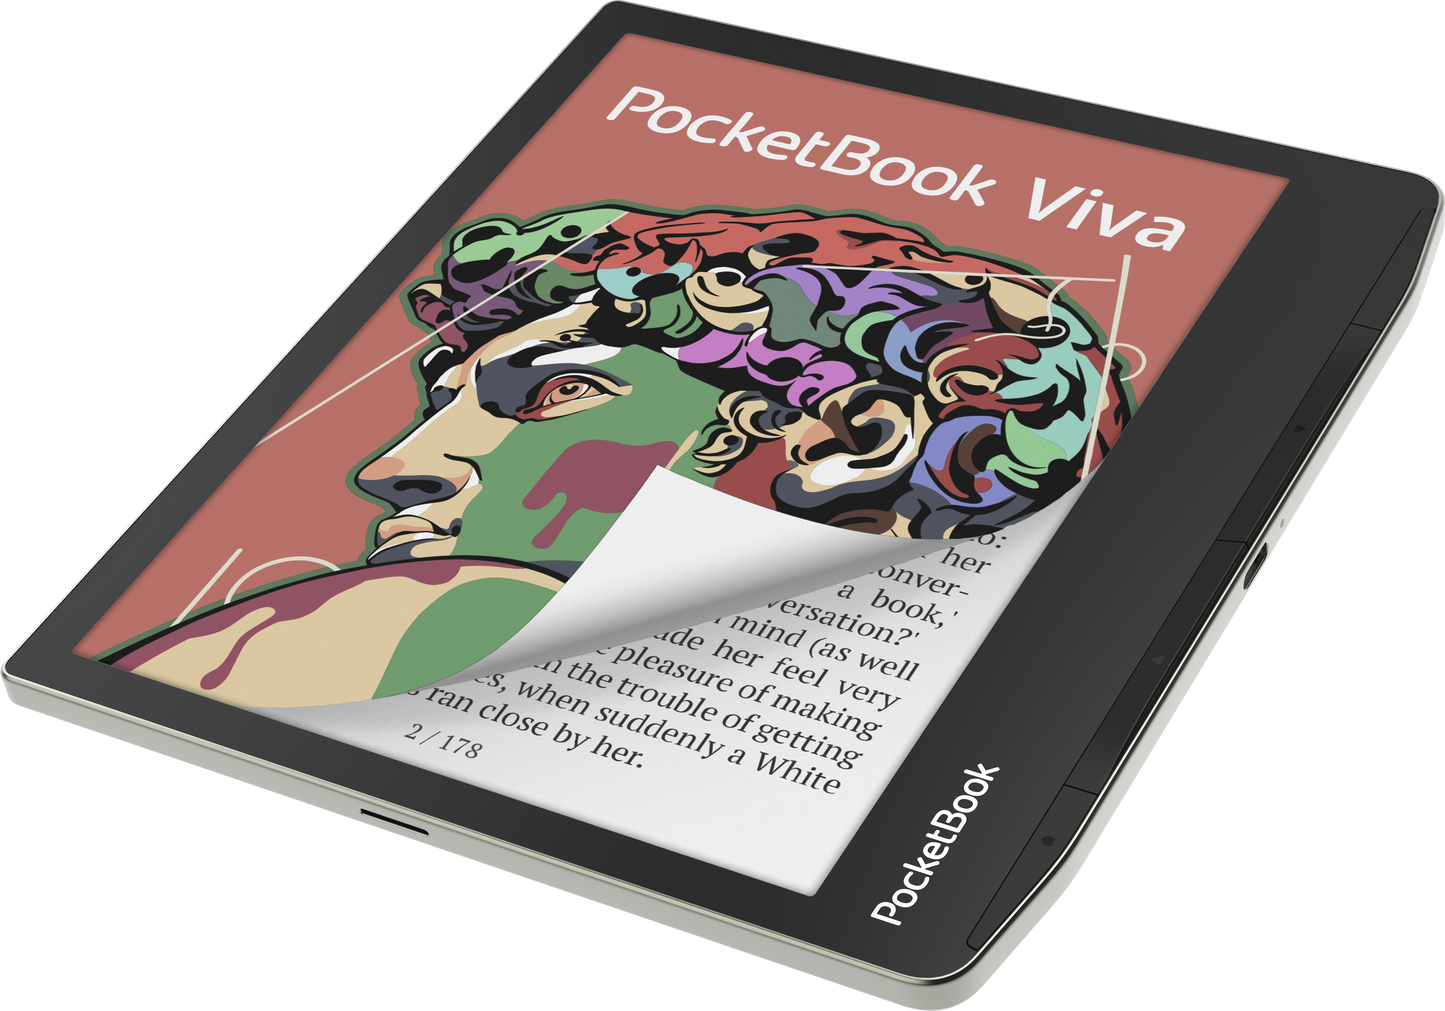 Pocketbook Viva E-Reader